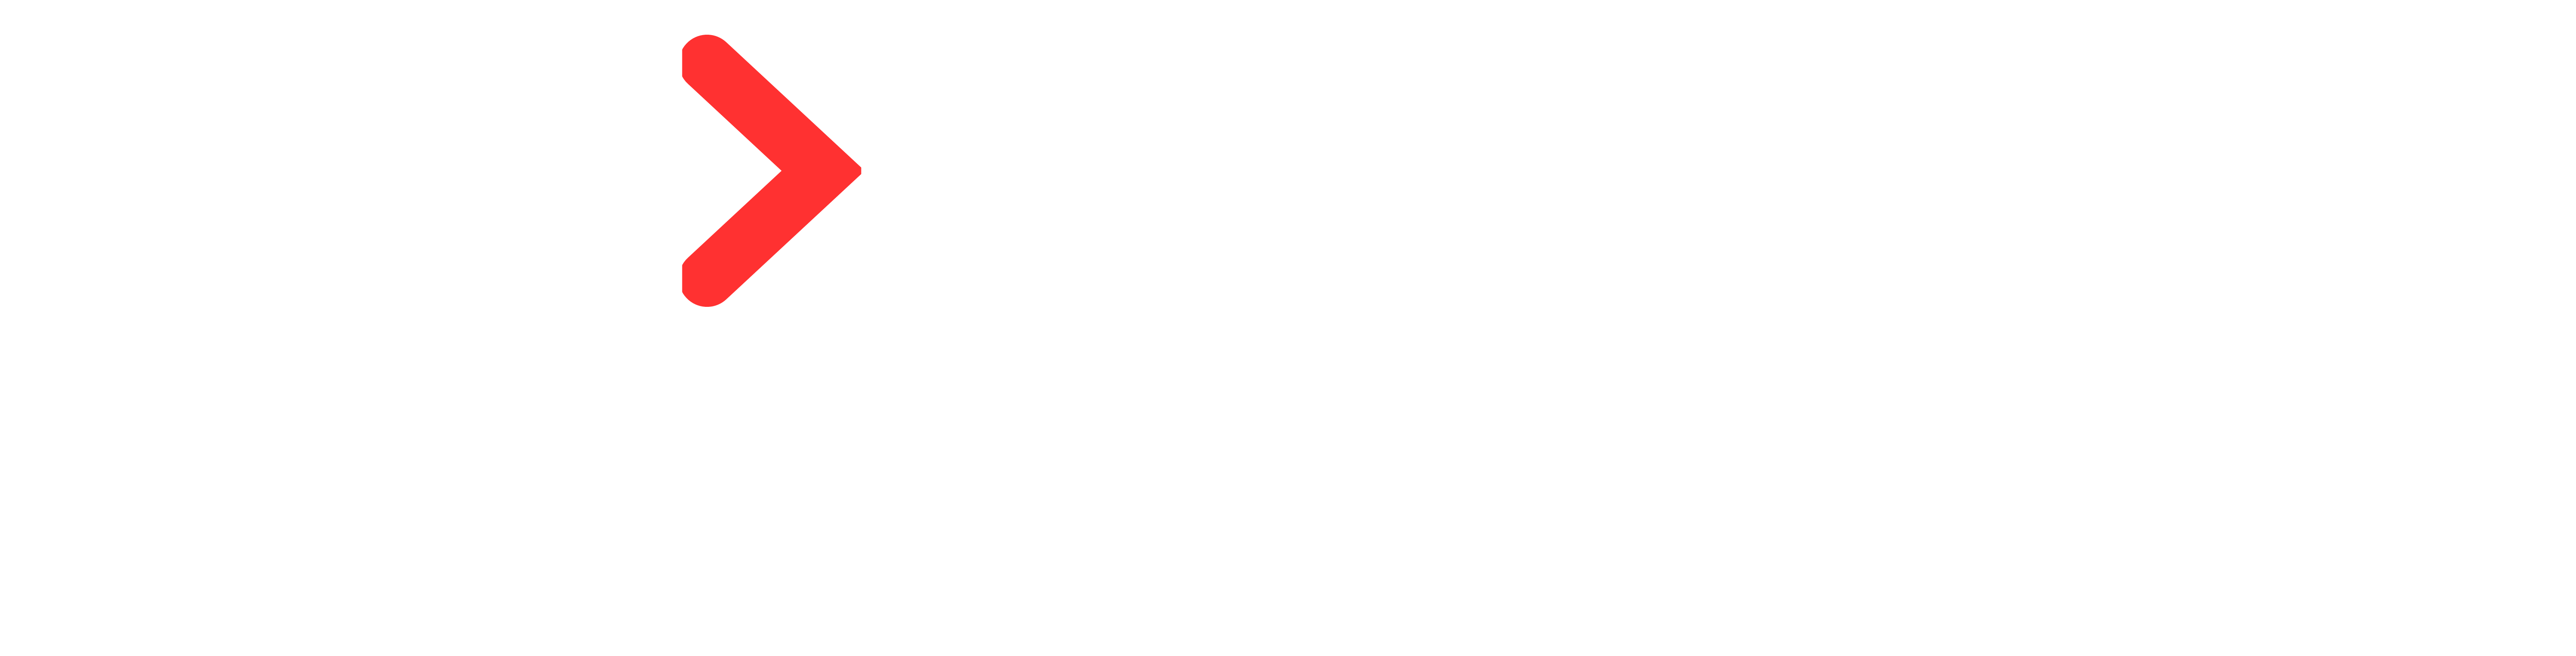 Limtech Technology